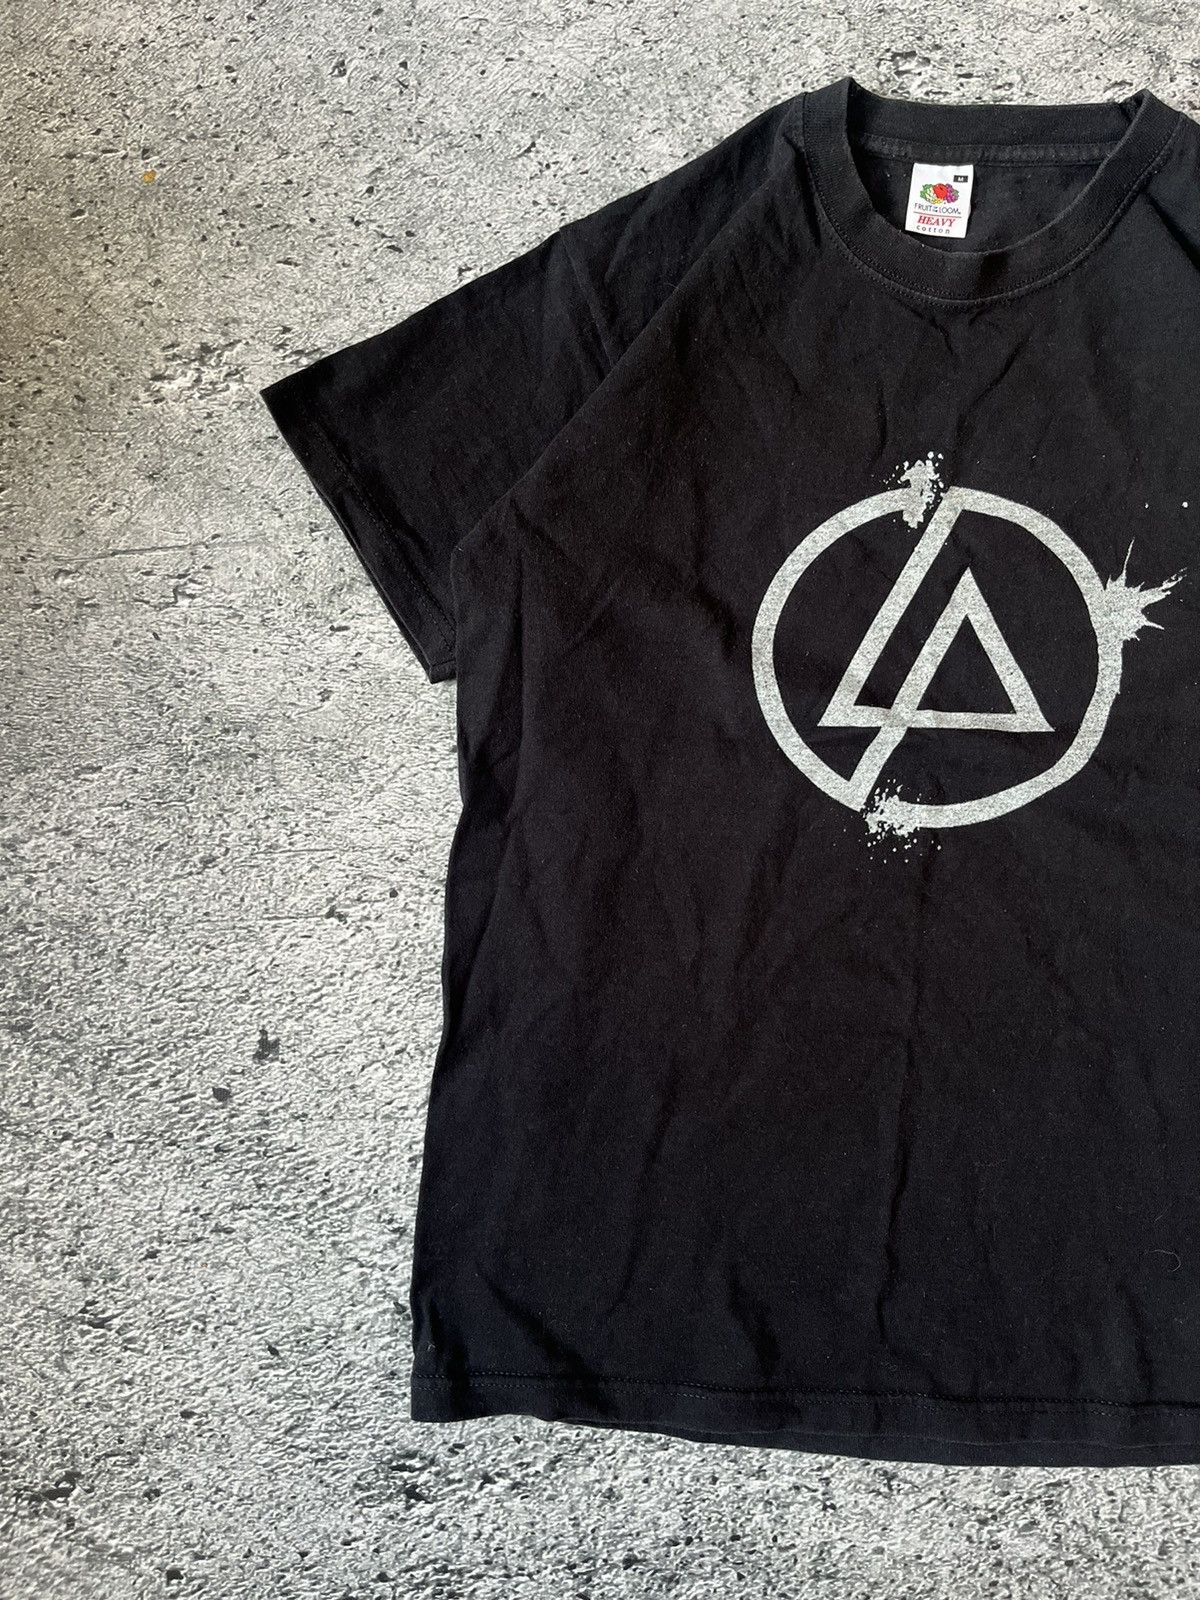 Vintage Vintage 2000 Linkin Park Promo Band T-Shirt Size US M / EU 48-50 / 2 - 2 Preview